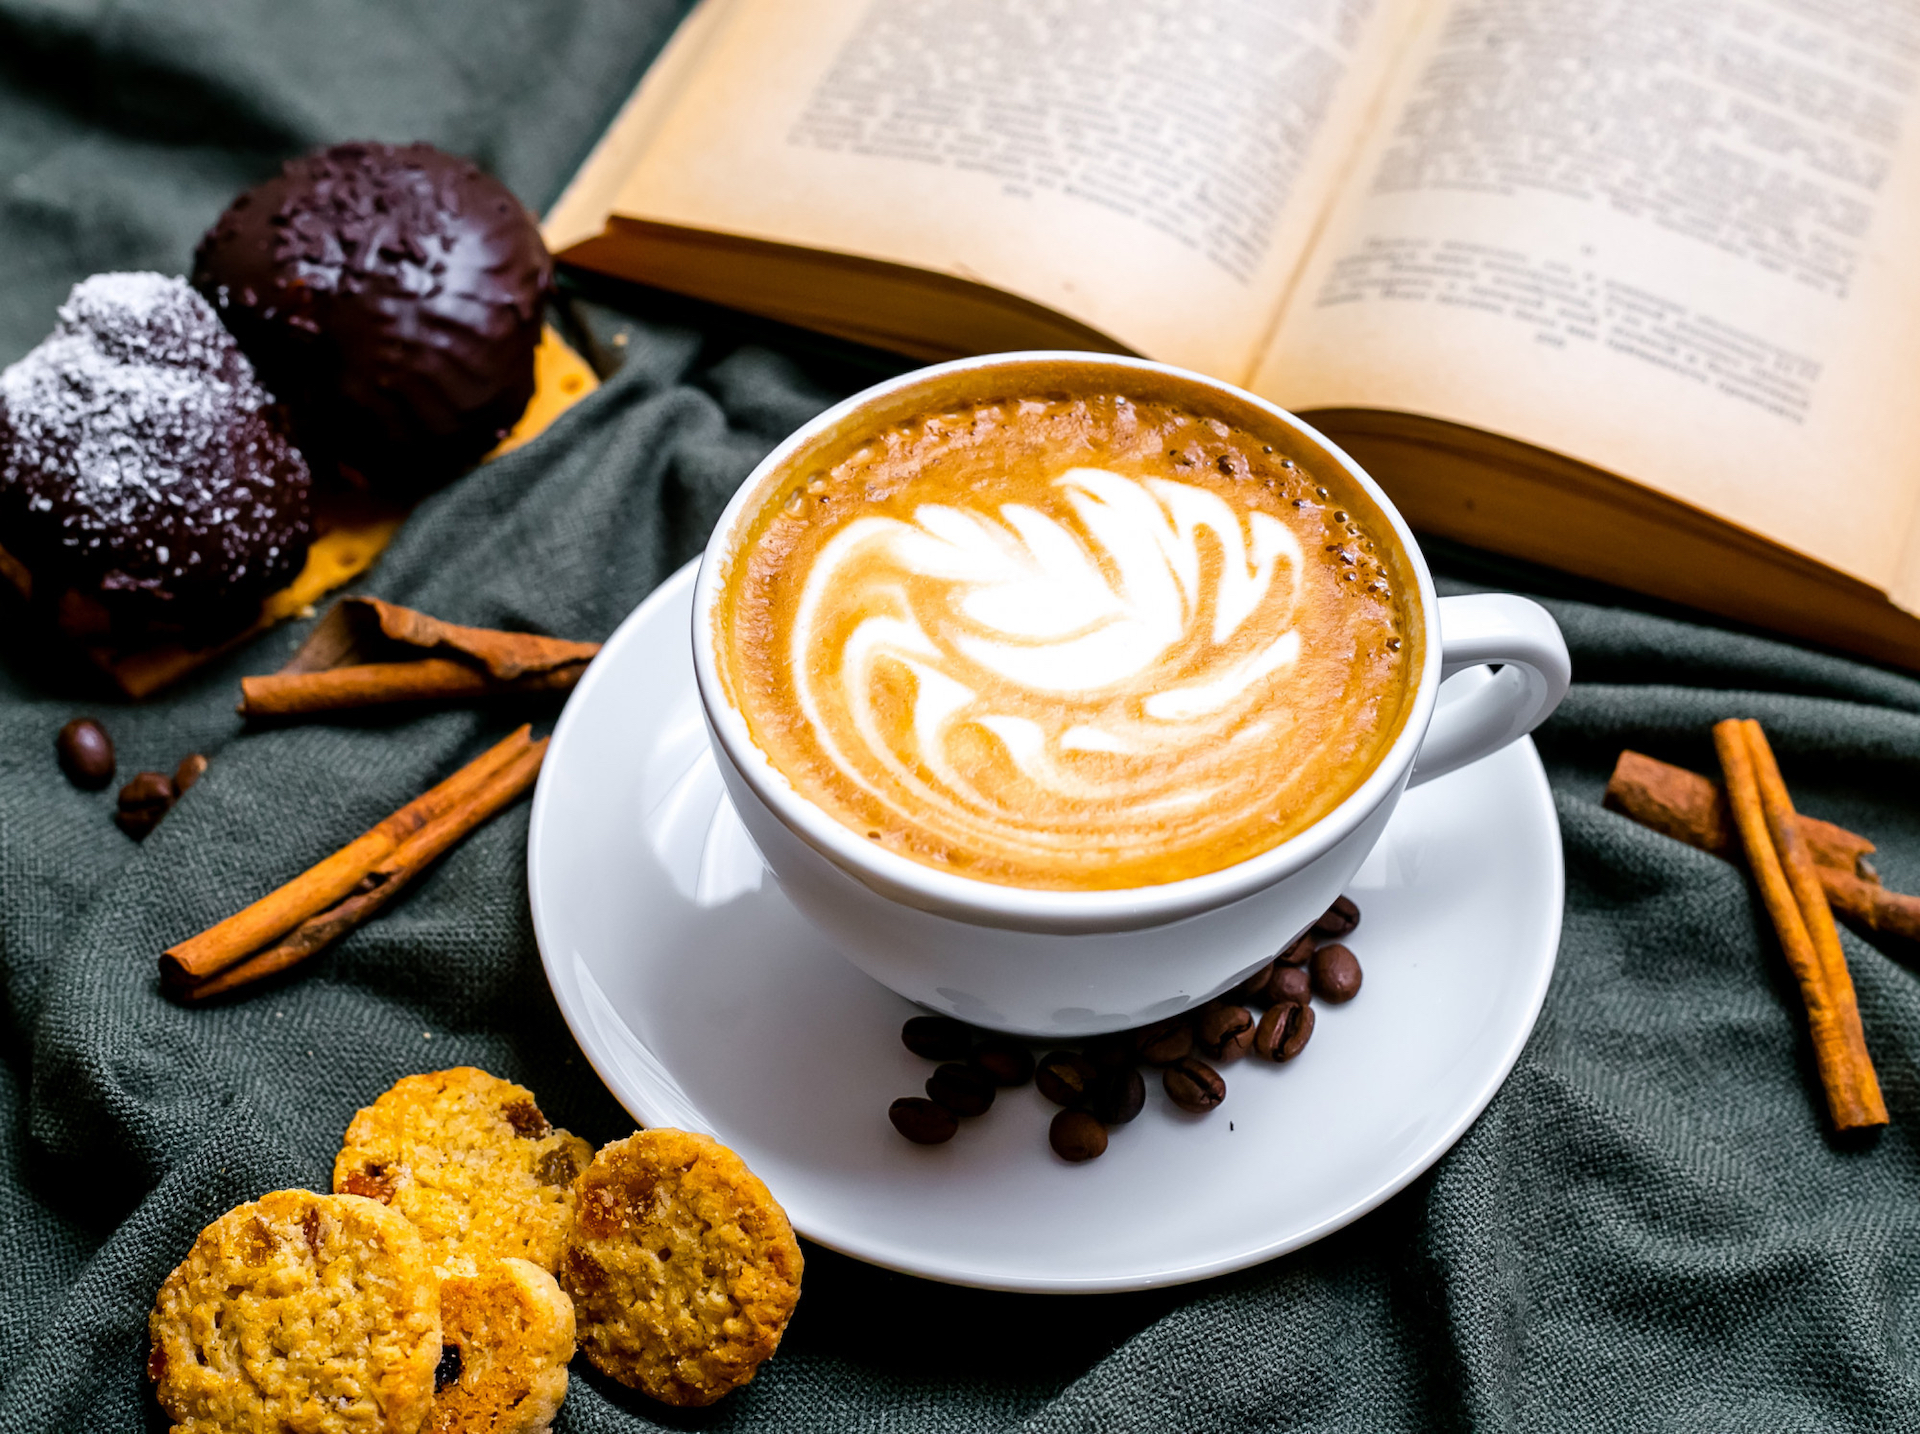 O Cappuccino faz parte do dia a dia brasileiro. É um dos itens mais pedidos nas cafeterias, no entanto facilmente pode ser preparado em casa / GB Imagem